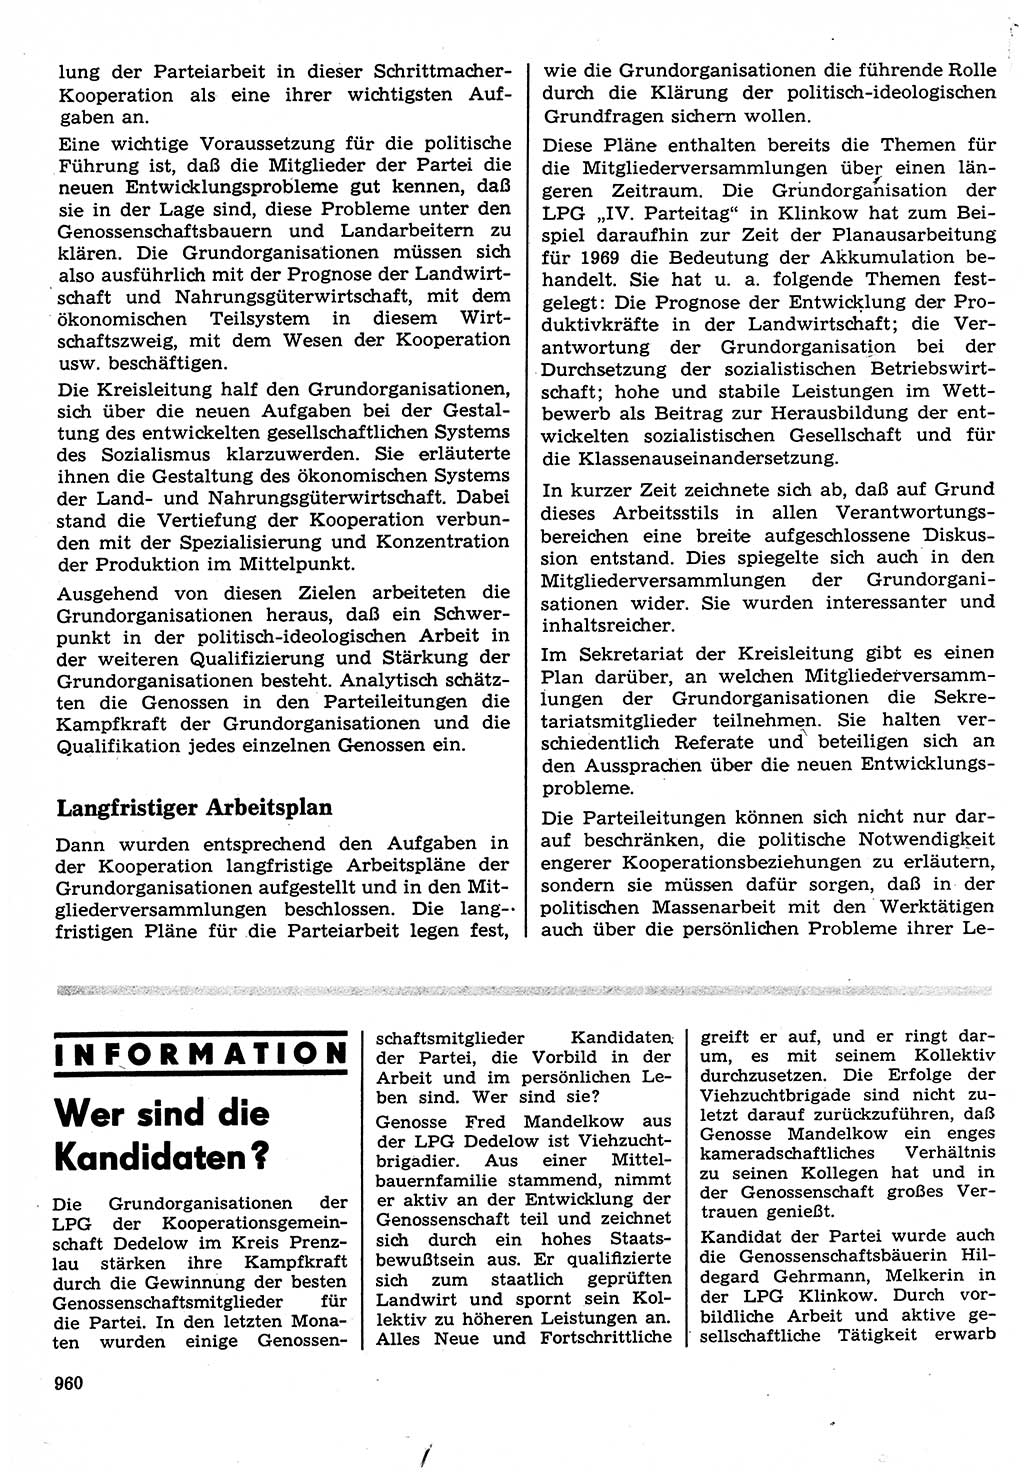 Neuer Weg (NW), Organ des Zentralkomitees (ZK) der SED (Sozialistische Einheitspartei Deutschlands) für Fragen des Parteilebens, 23. Jahrgang [Deutsche Demokratische Republik (DDR)] 1968, Seite 944 (NW ZK SED DDR 1968, S. 944)